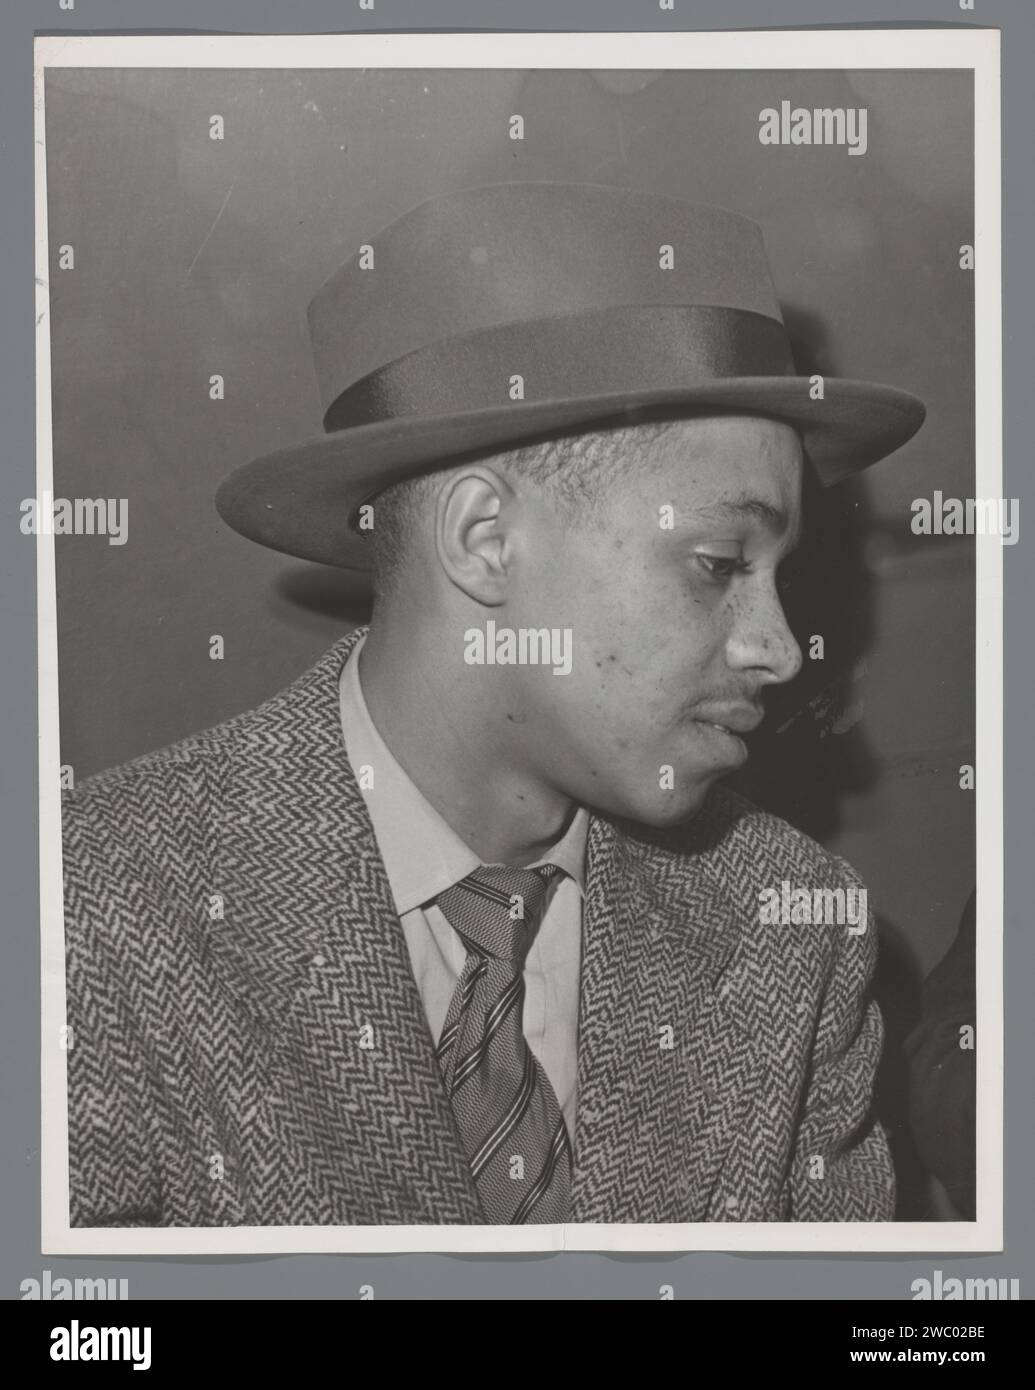 Portret van Don Taylor, anonym, 1952 Foto Vereinigte Staaten von Amerika baryta Papier Gelatine Silberdruck historische Personen. Erwachsener Mann Stockfoto